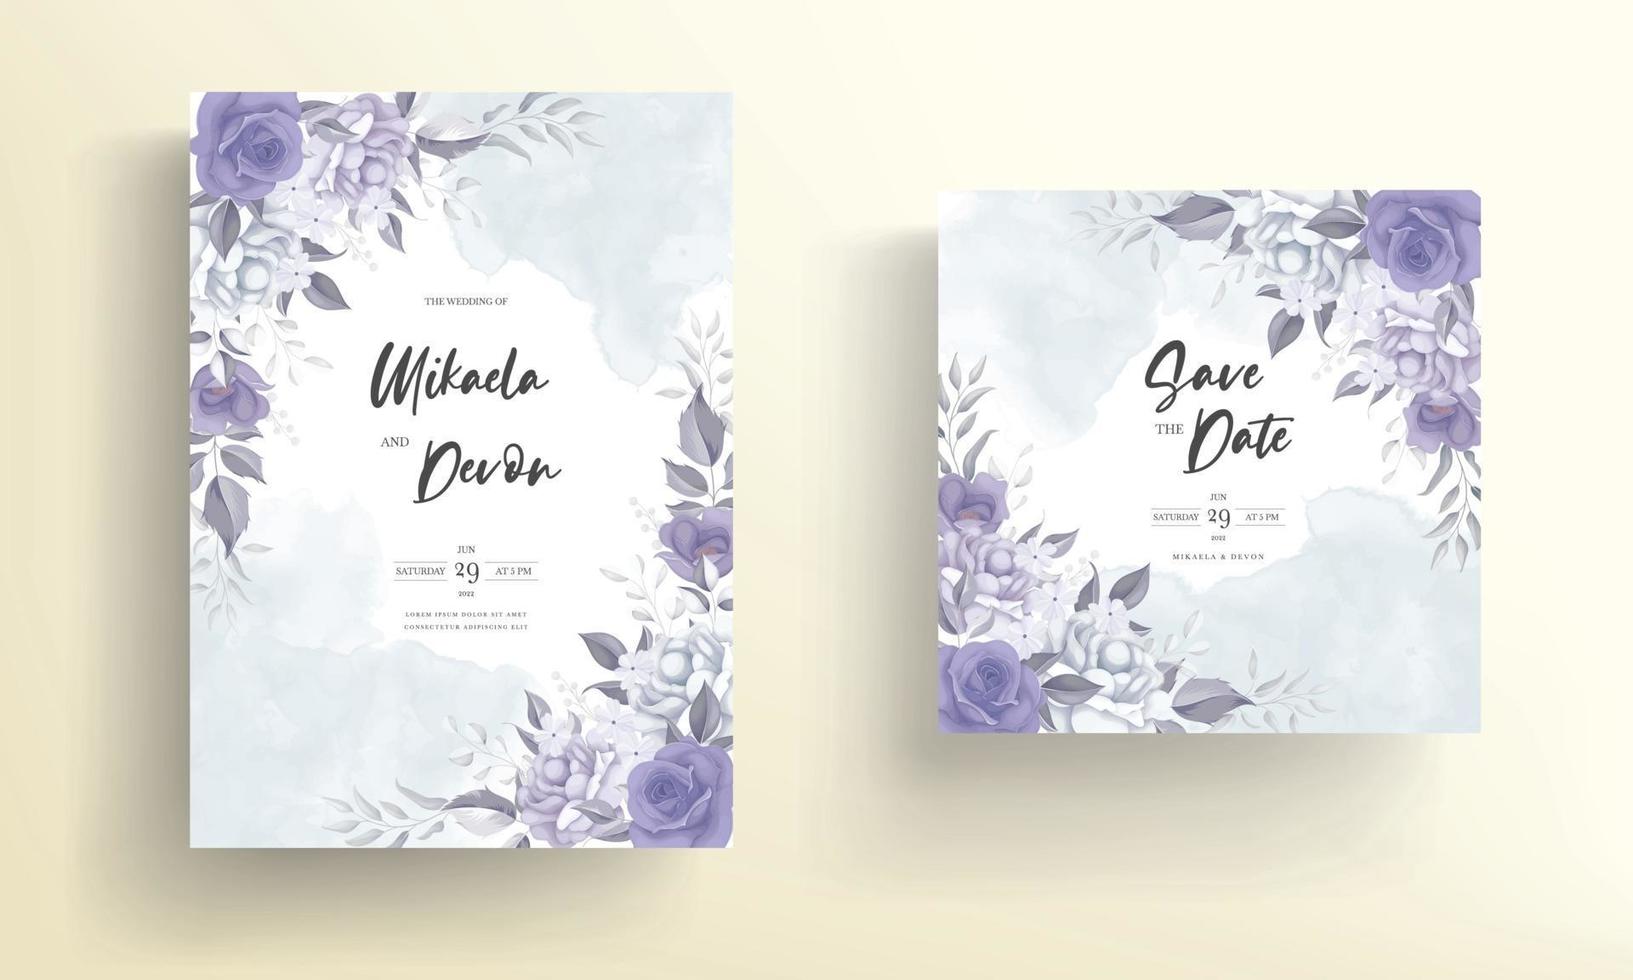 belle carte d'invitation de mariage avec décoration de fleurs violettes vecteur